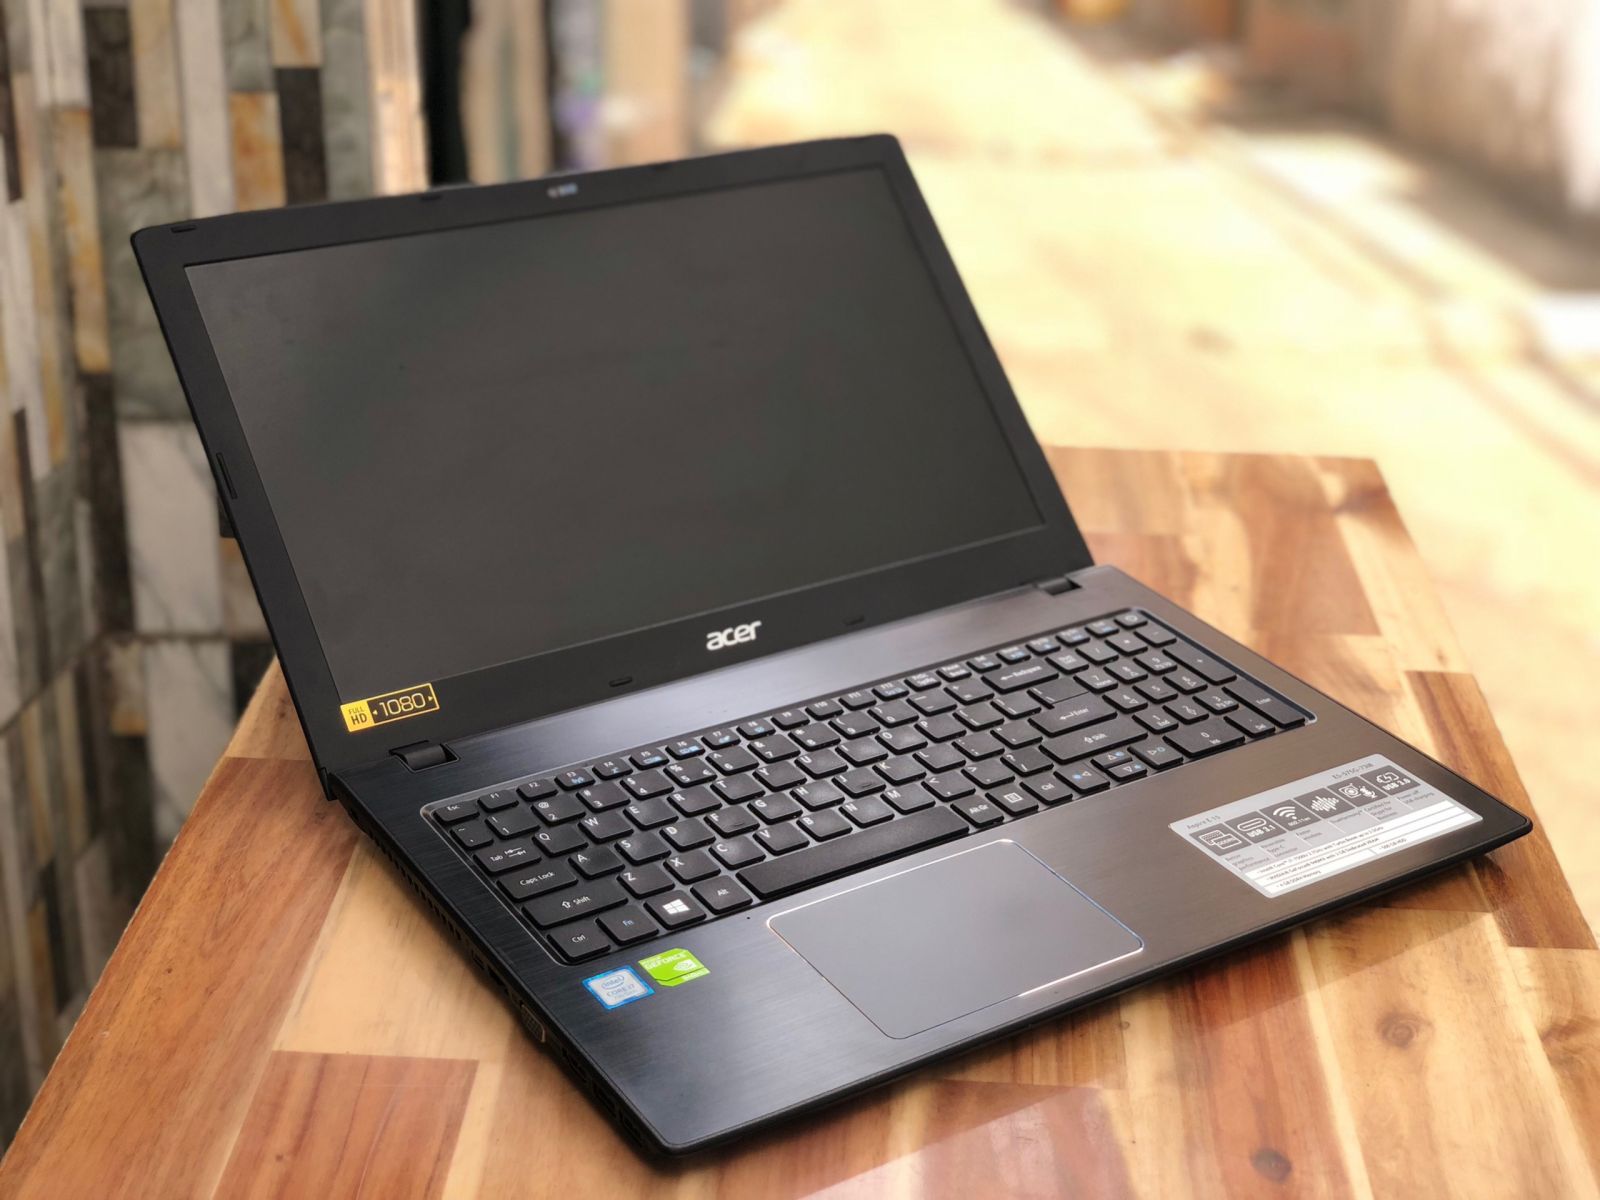 Laptop Acer E5-576G/ i7 7500U/ 8G/ SSD128+500G/ Vga GT940MX/ Full HD/ Chuyên Game Đồ Họa/ Giá rẻ4